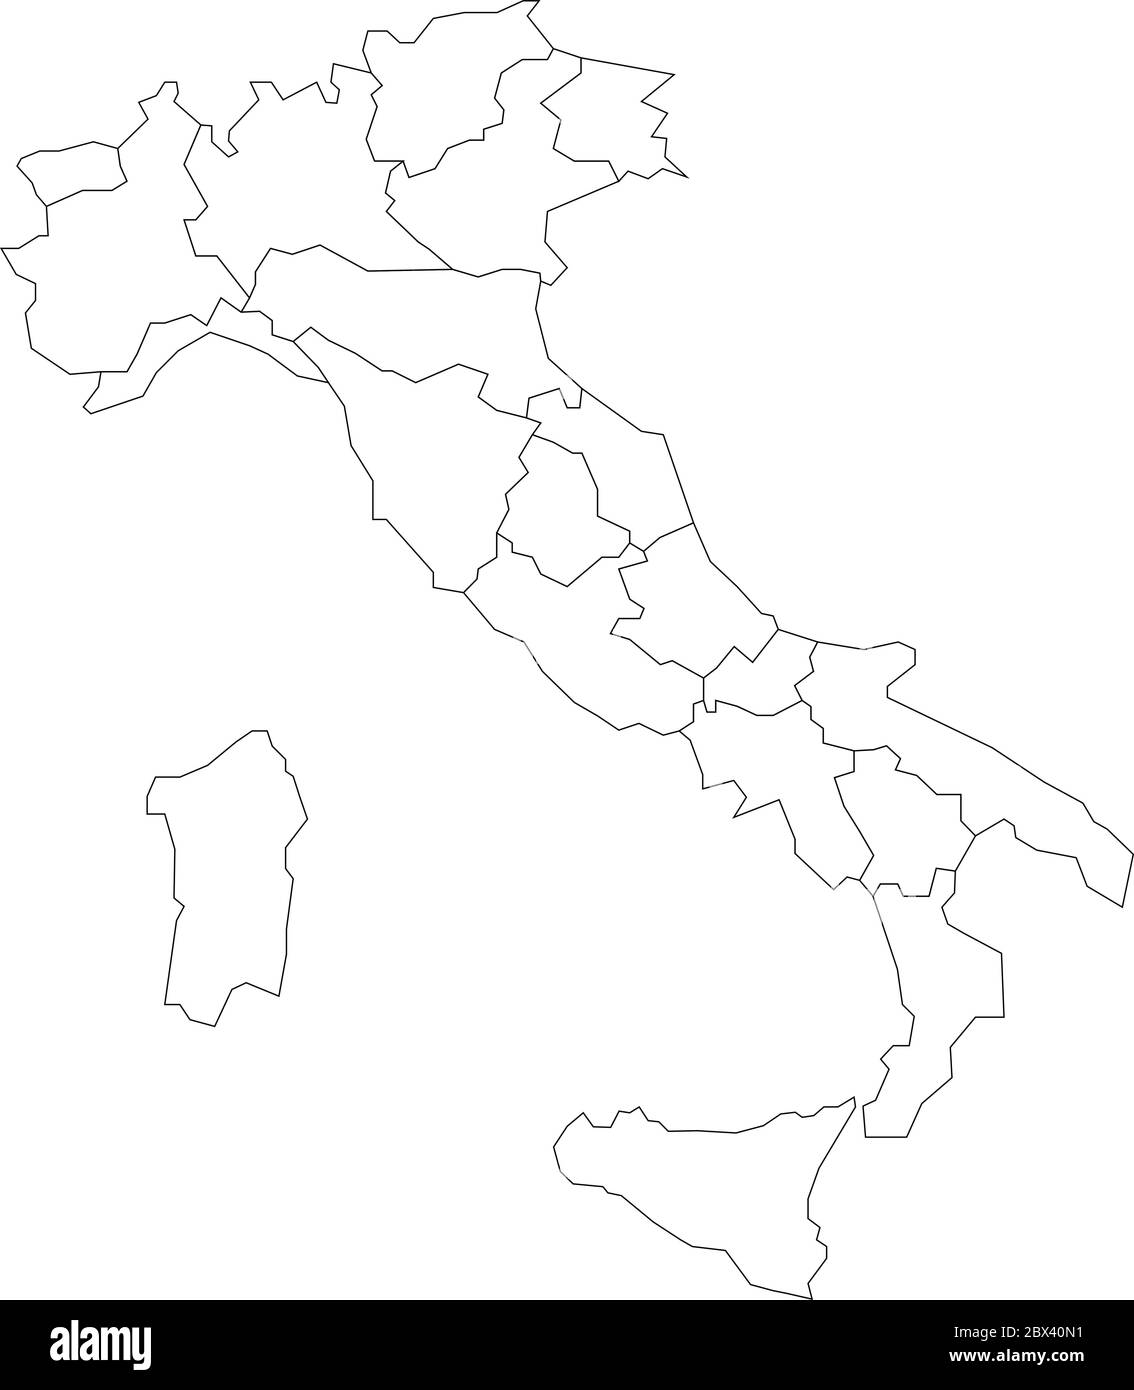 Mappa dell'Italia divisa in 20 regioni amministrative. Terra bianca e bordi neri. Semplice illustrazione vettoriale piatta. Illustrazione Vettoriale